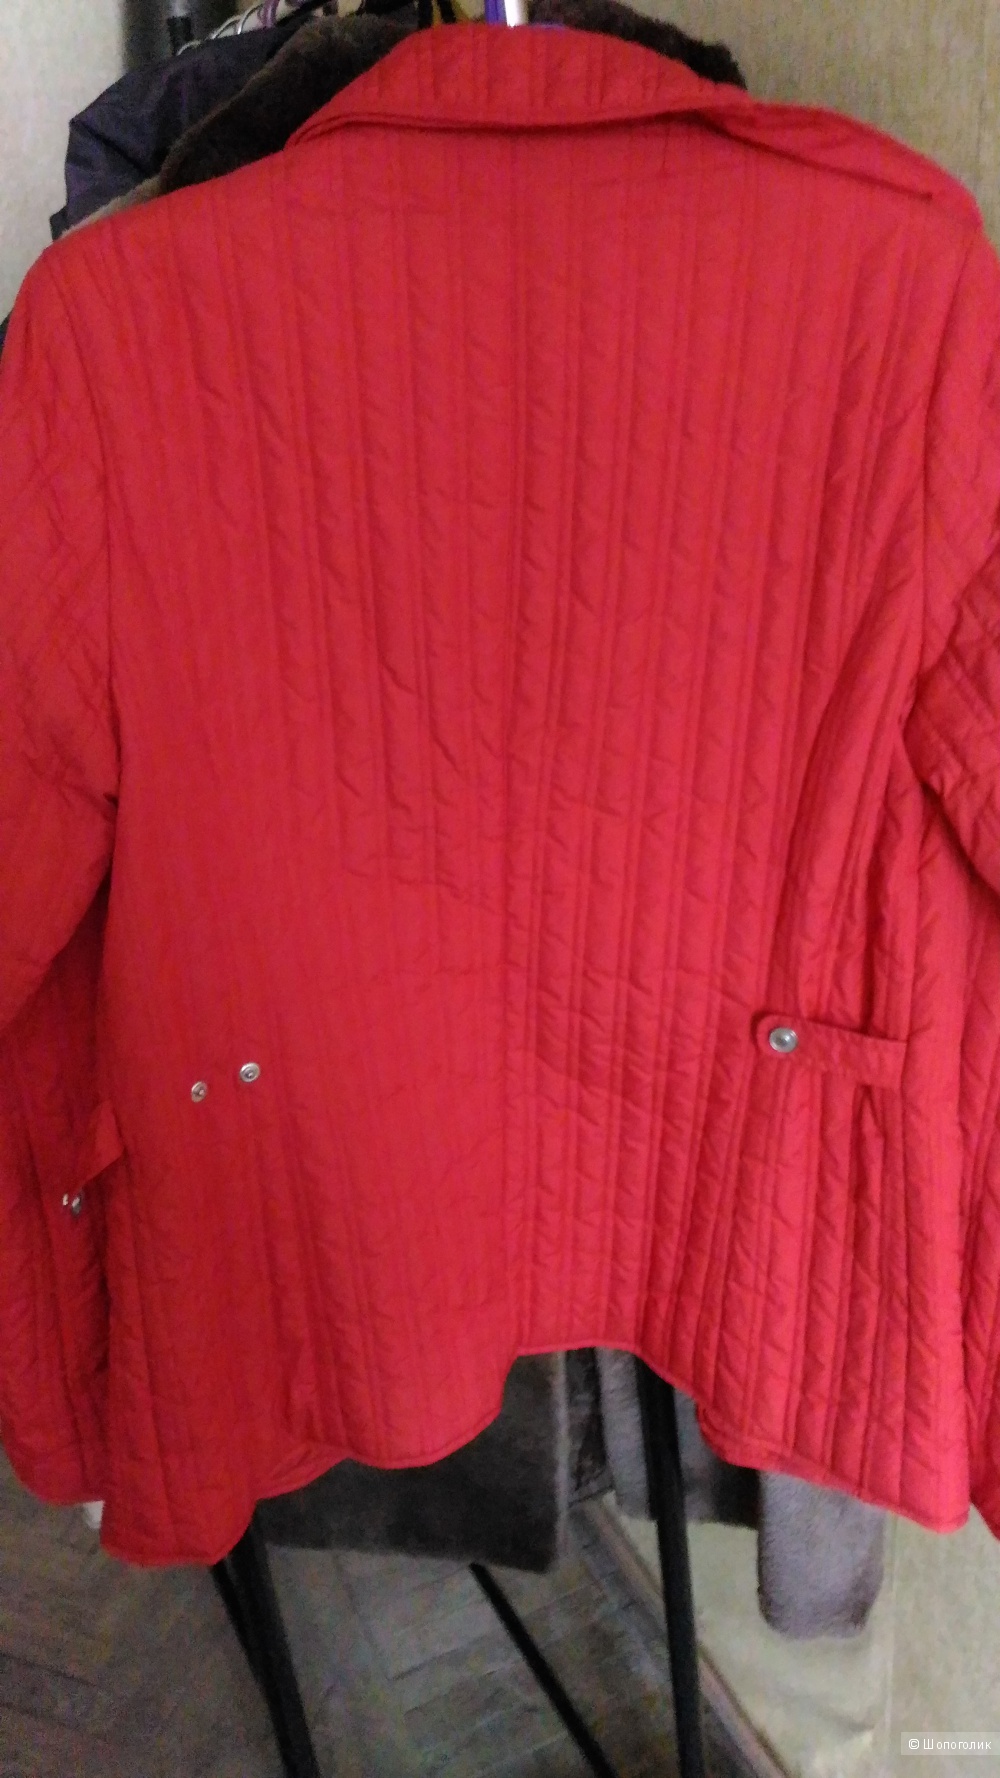 Куртка Marco Pecci, размер 38 (E)